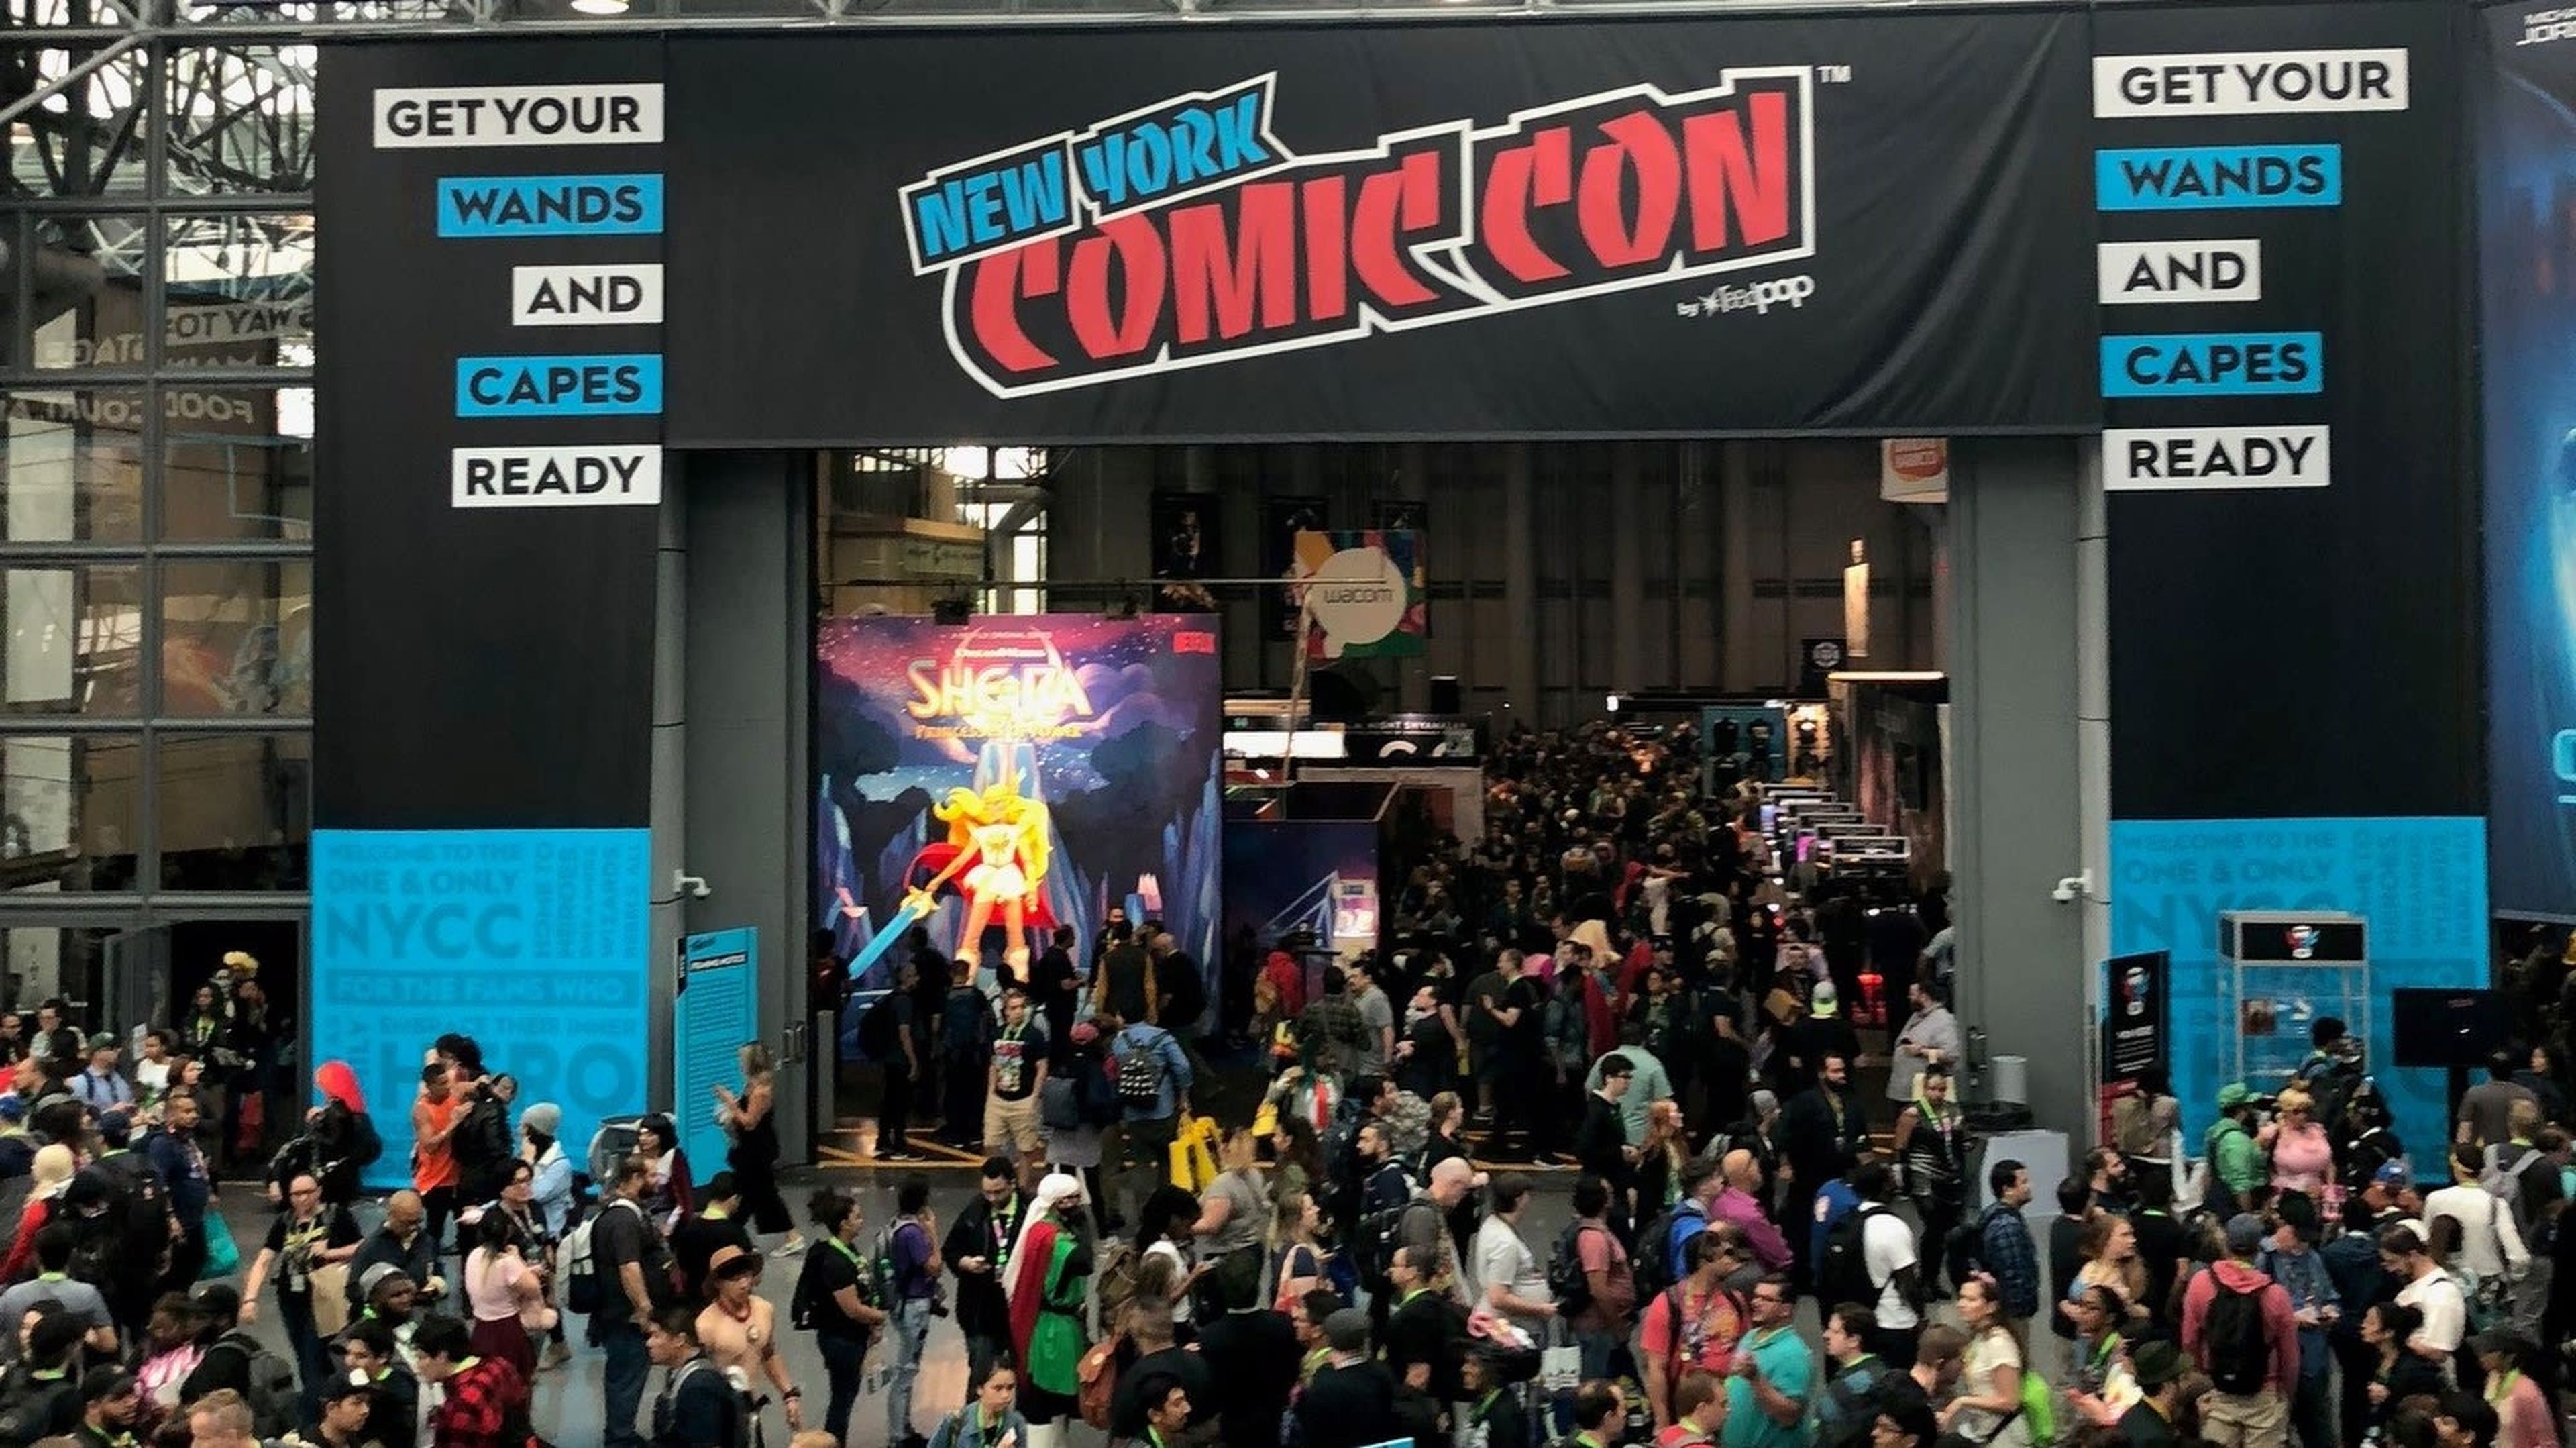 New York Comic-Con